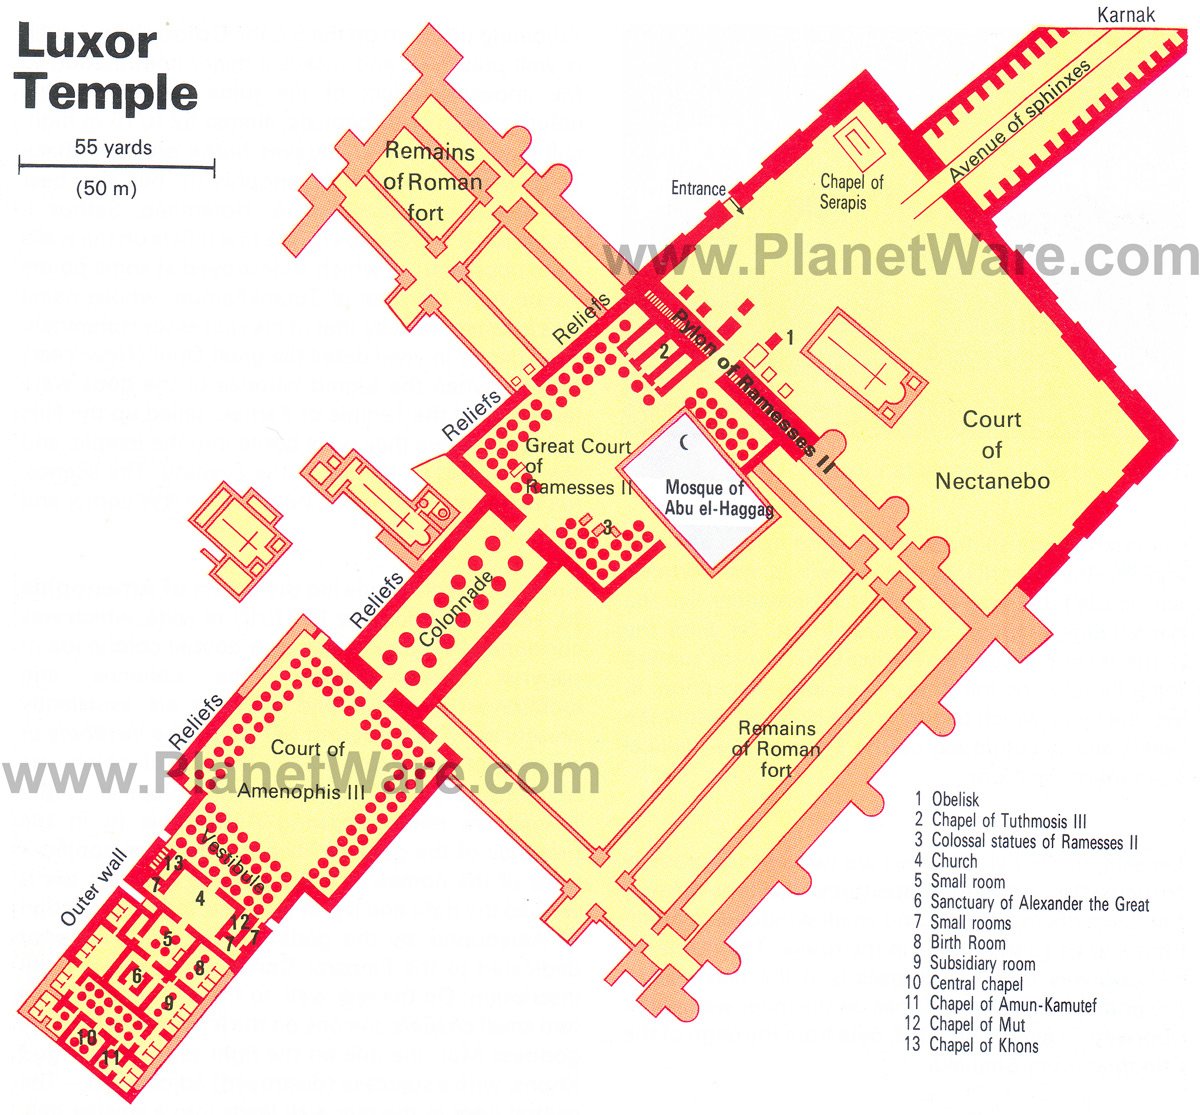 Luxor Temple - Floor plan map